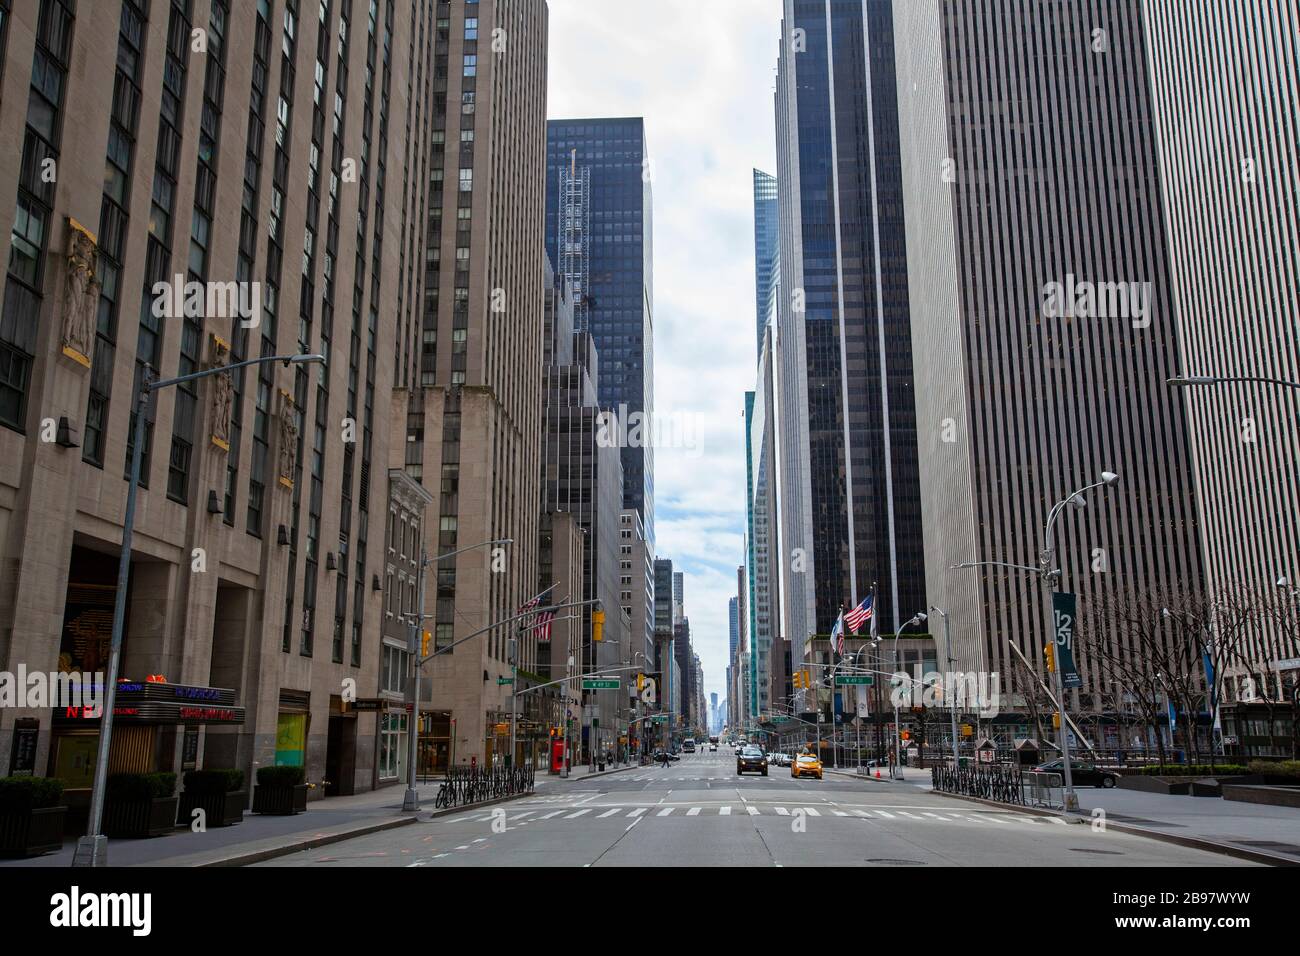 Pocos automóviles viajan por las calles vacías de la ciudad de Nueva York debido a COVID-19, Coronavirus. Foto de stock